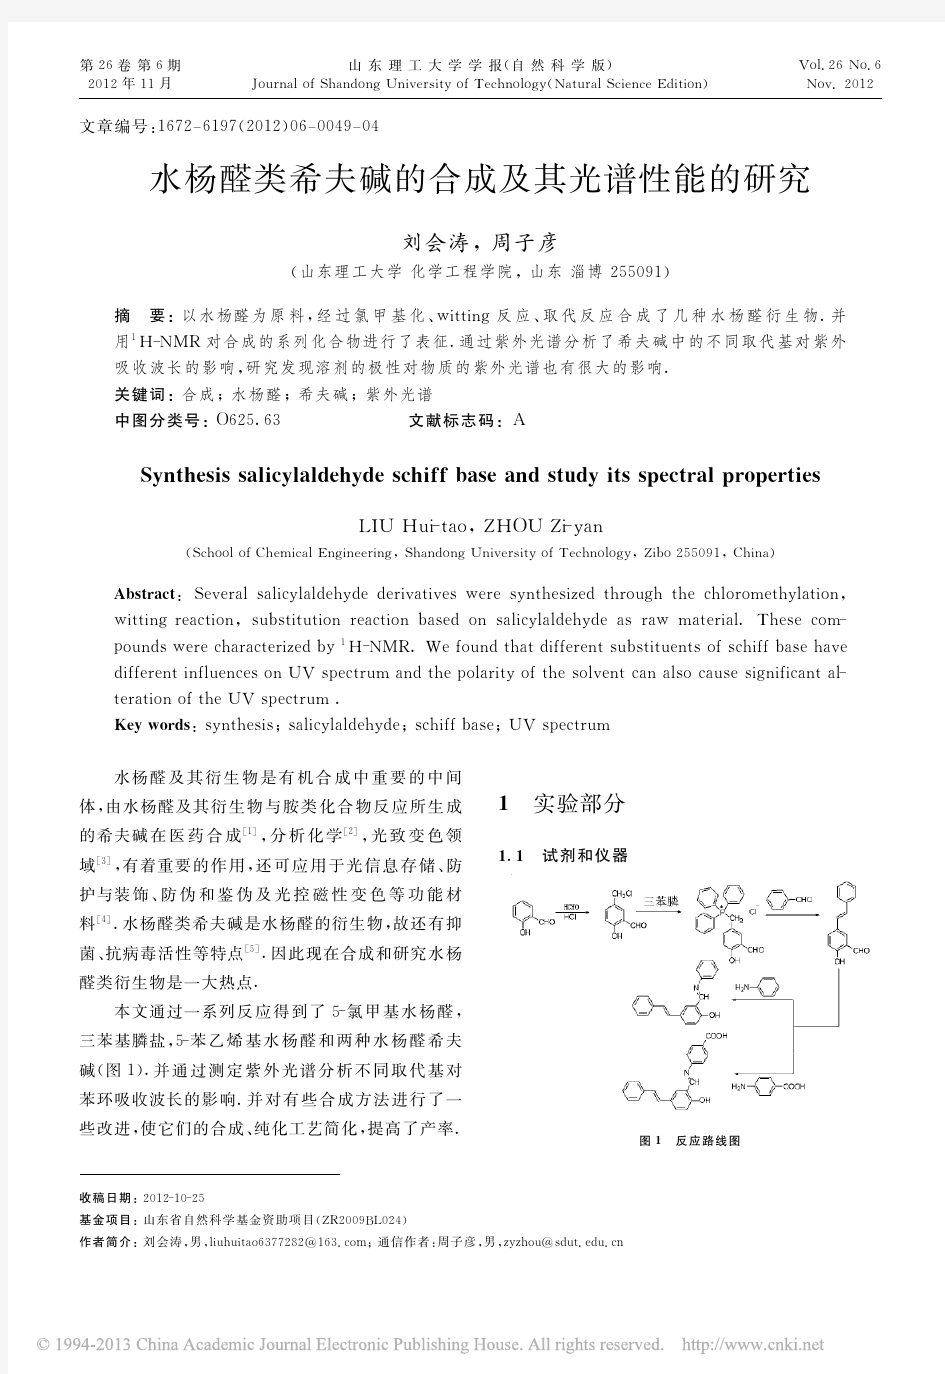 水杨醛类希夫碱的合成及其光谱性能的研究_刘会涛